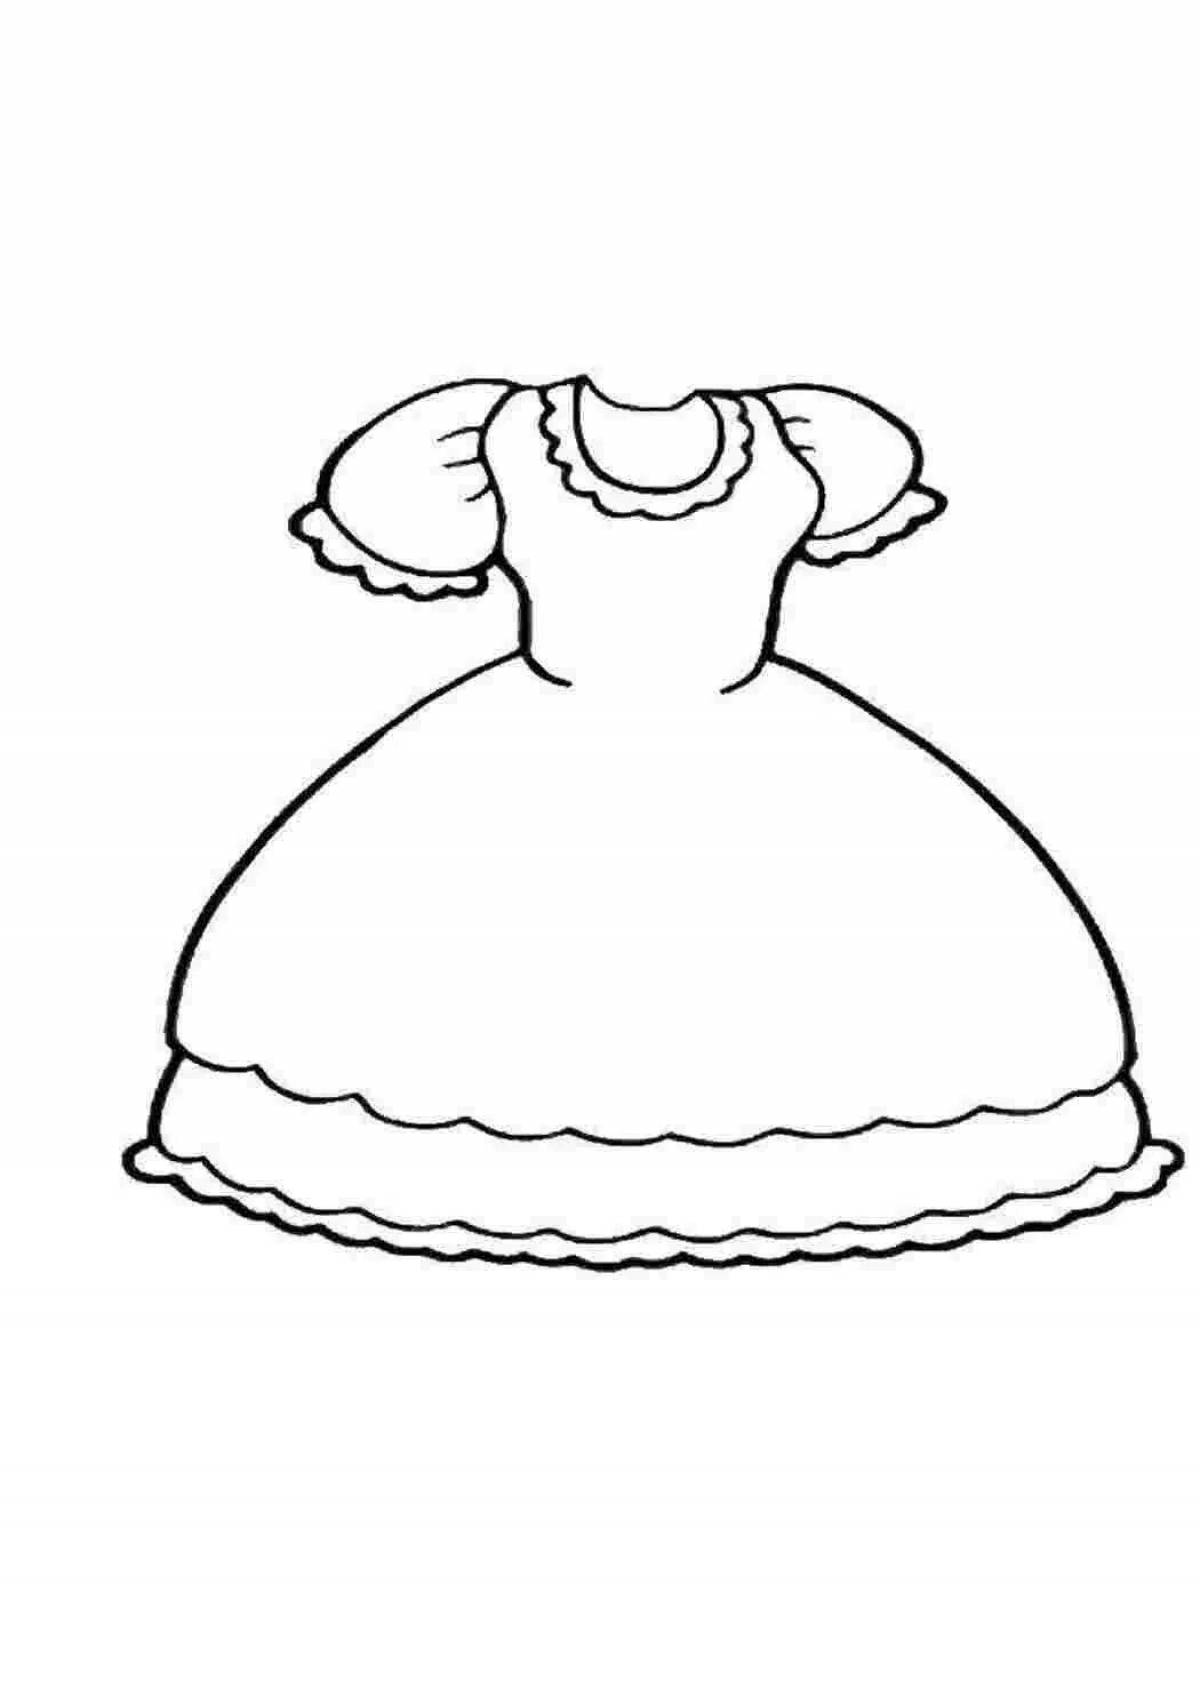 Раскраска радостное платье для детей 2-3 лет